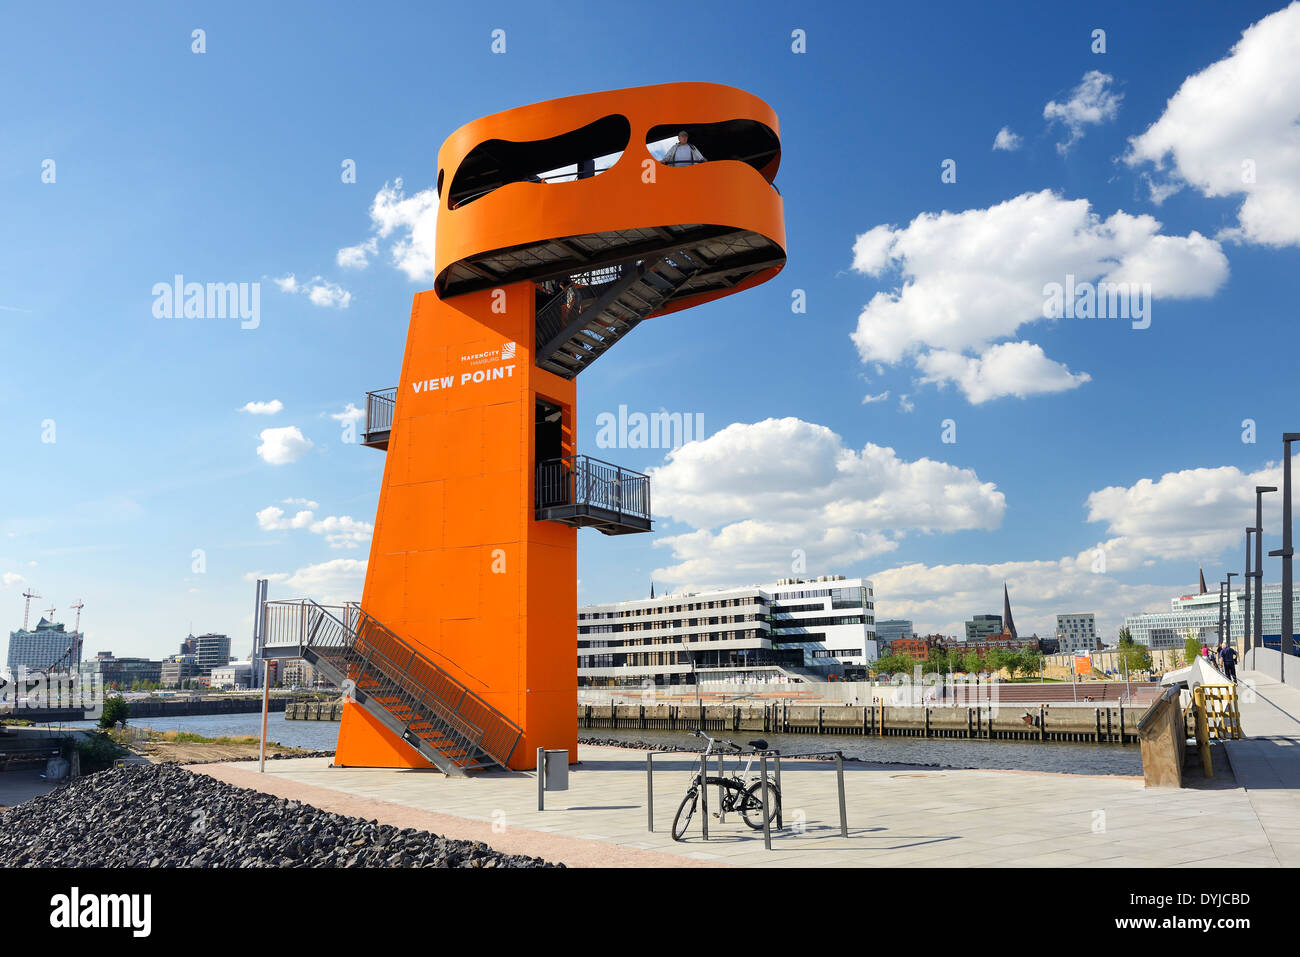 Aussichtsturm View Point am Baakenhafen in der Hafencity von Hamburg, Deutschland, Europa Stock Photo